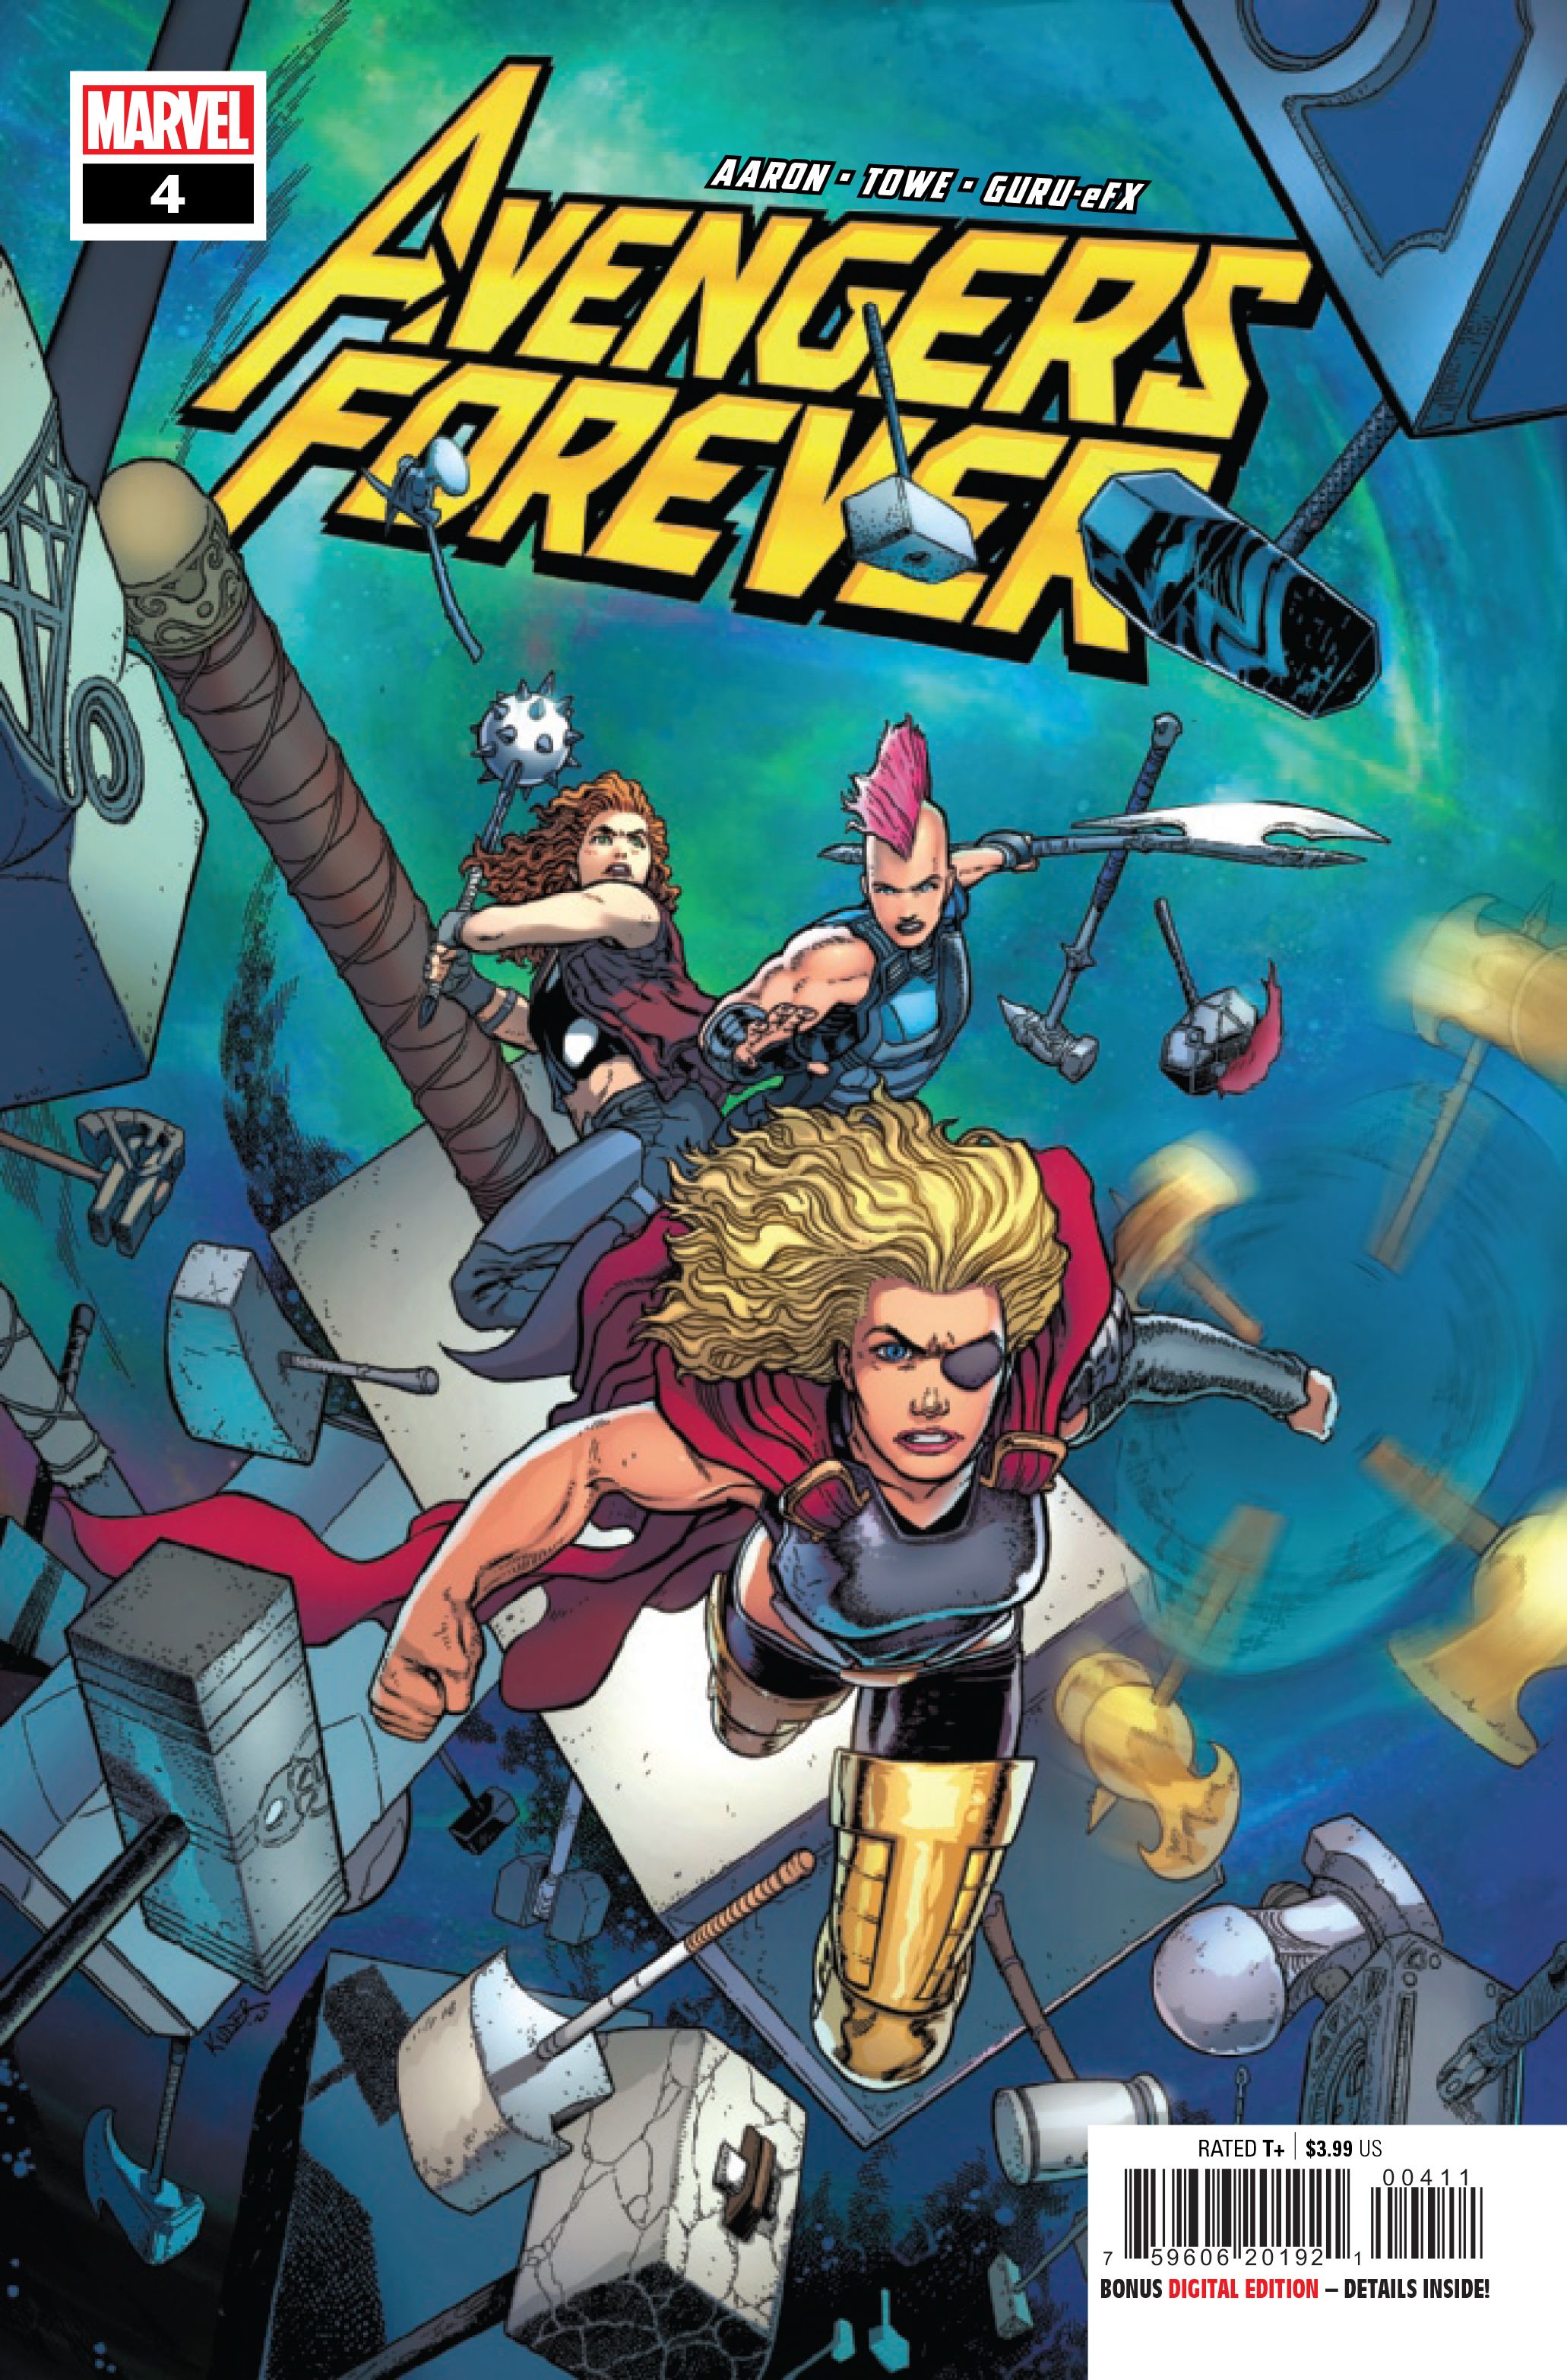 Aaron Kuder's cover for Avengers Forever #4.